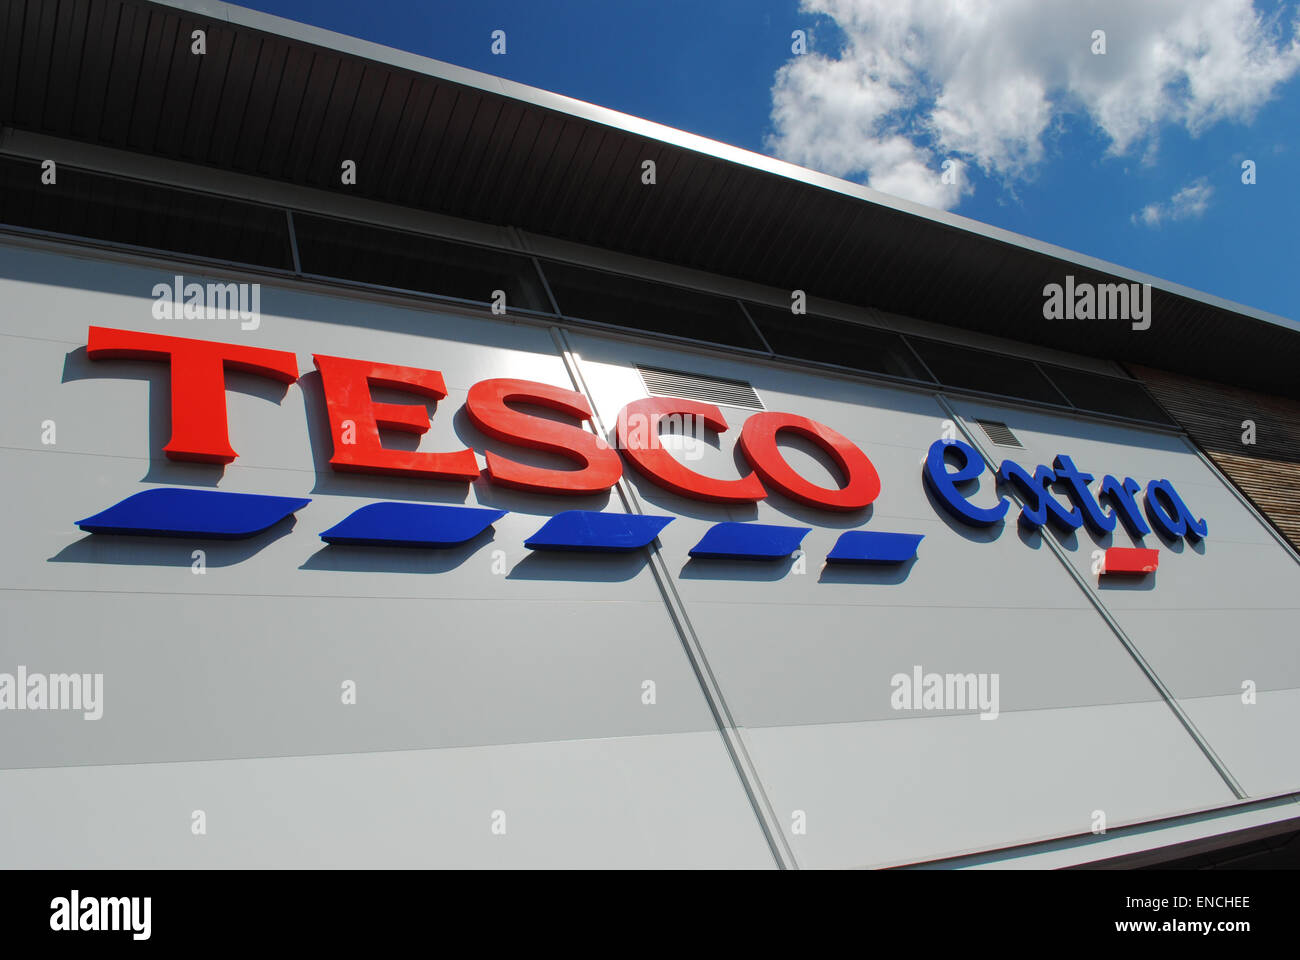 Dudley - 26 Apr: Blick auf ein Tesco-Logo auf der Außenseite eines Extra-Store am 26. April 2015 in Dudley, UK. Stockfoto